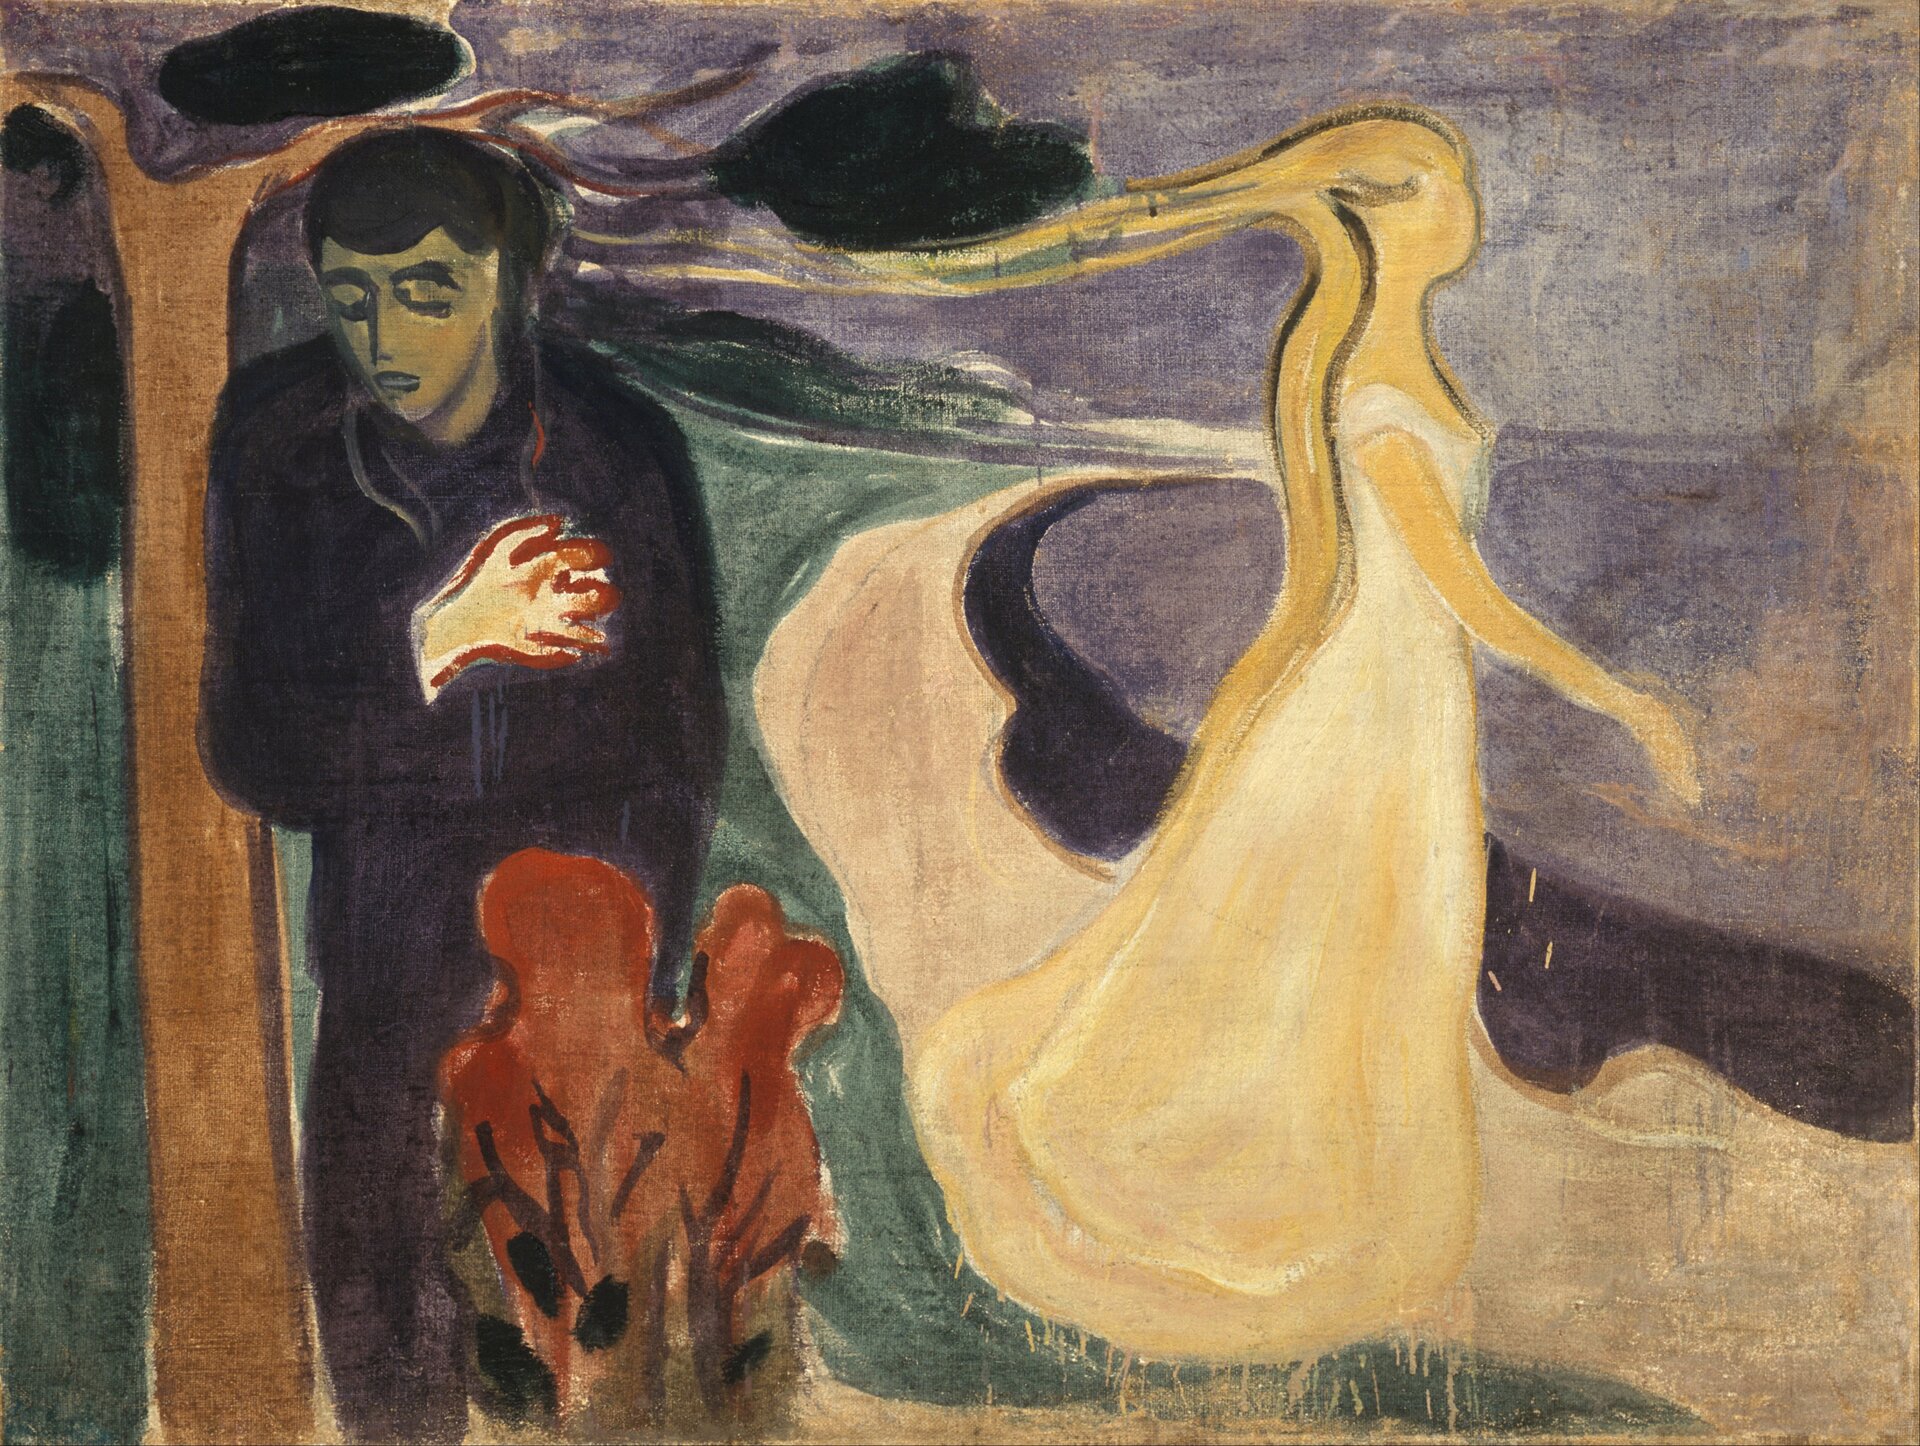 Rozłączenie Źródło: Edvard Munch, Rozłączenie, 1896, olej na płótnie, Muzeum Muncha w Oslo, domena publiczna.